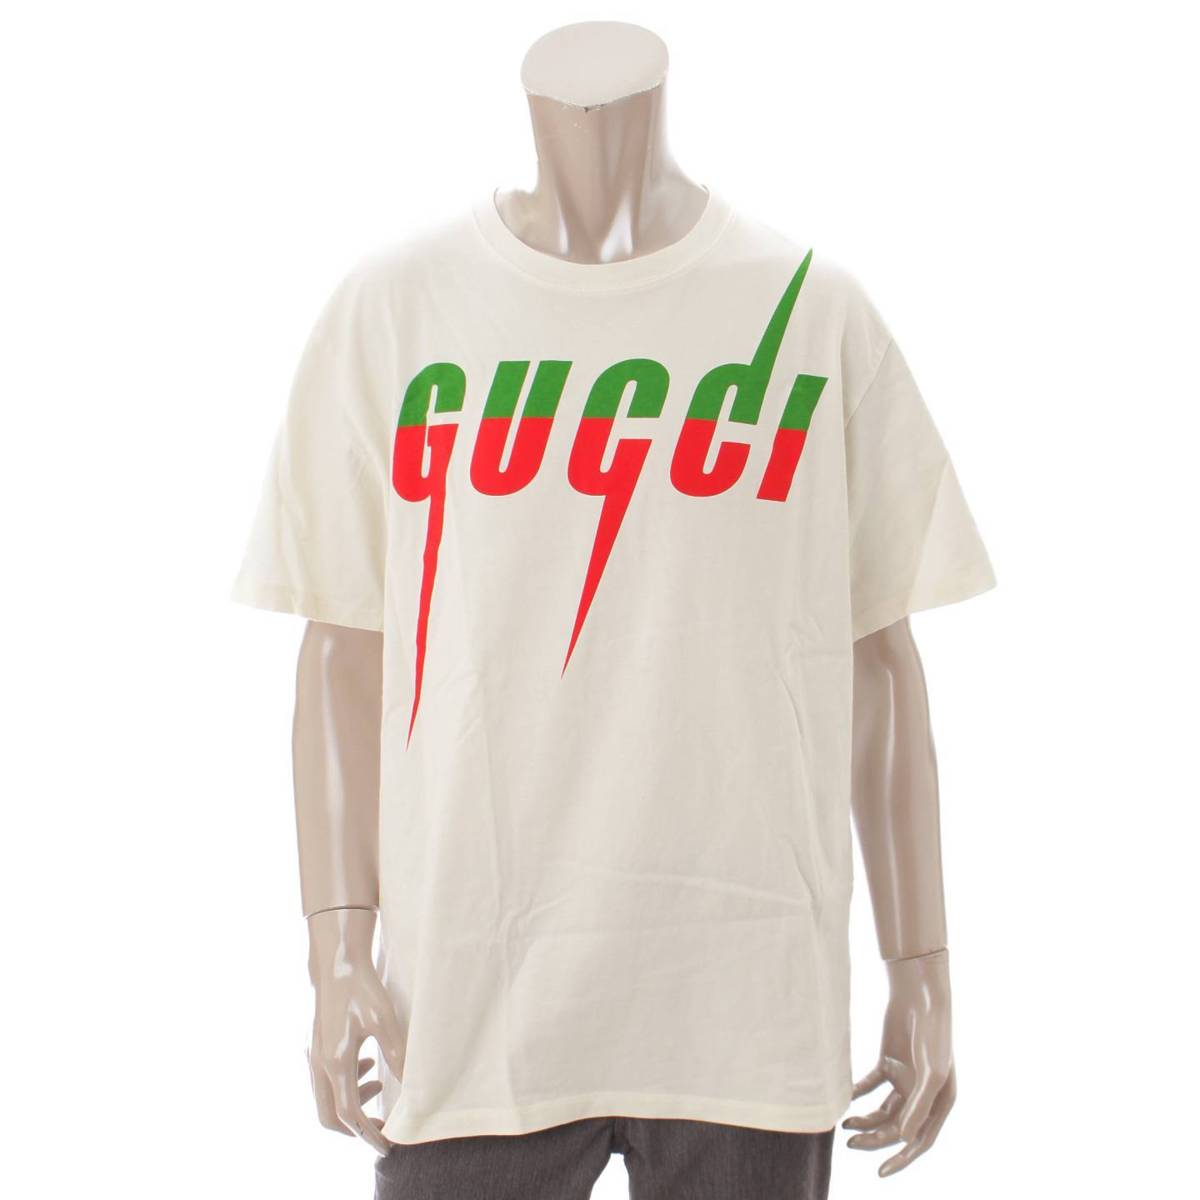 グッチ(Gucci) メンズ 19SS ブレードプリント ロゴ Tシャツ 565806 ホワイト M